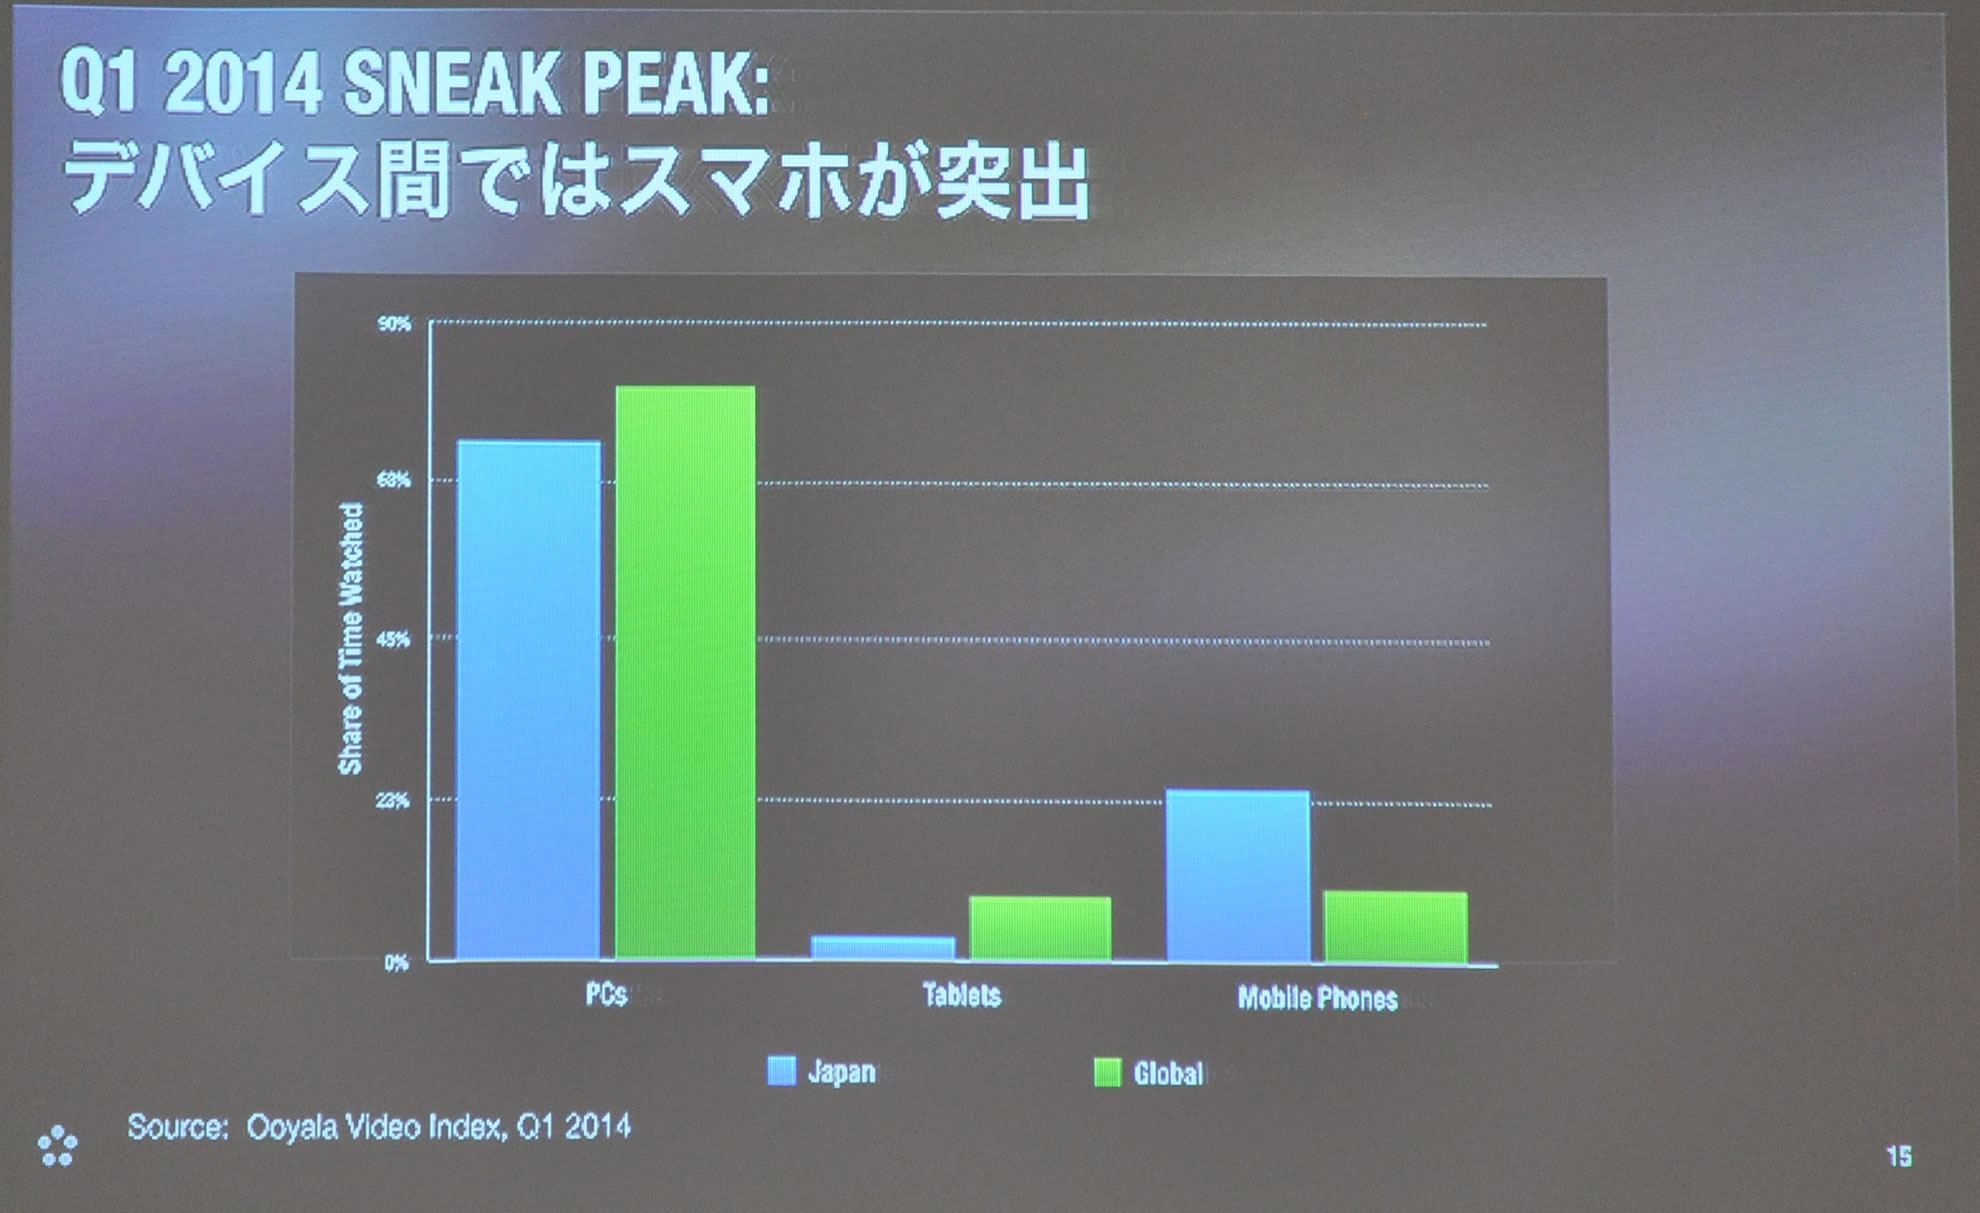 日本ではスマートフォンによる動画視聴が突出